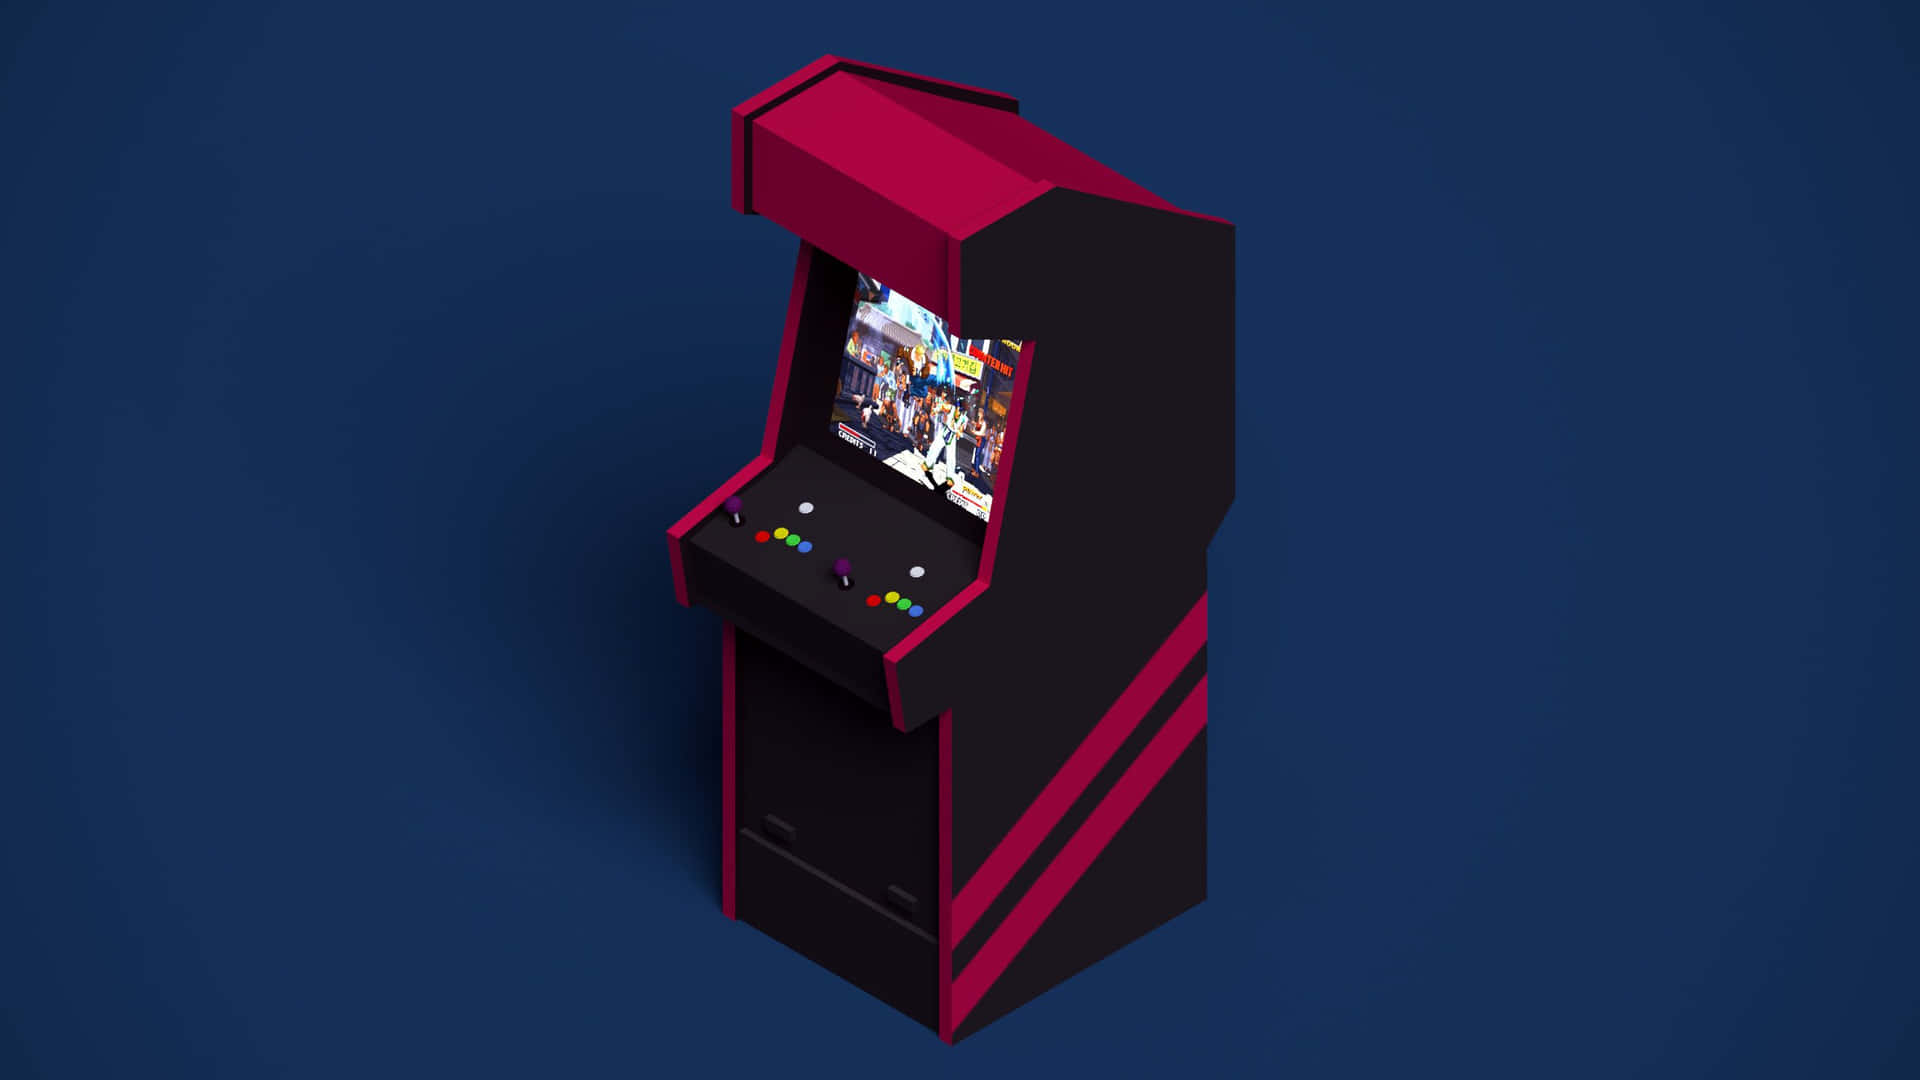 Tauchensie Ein In Das Retro Gaming Universum Mit Dem Einzigartigen Arcade-design. Wallpaper